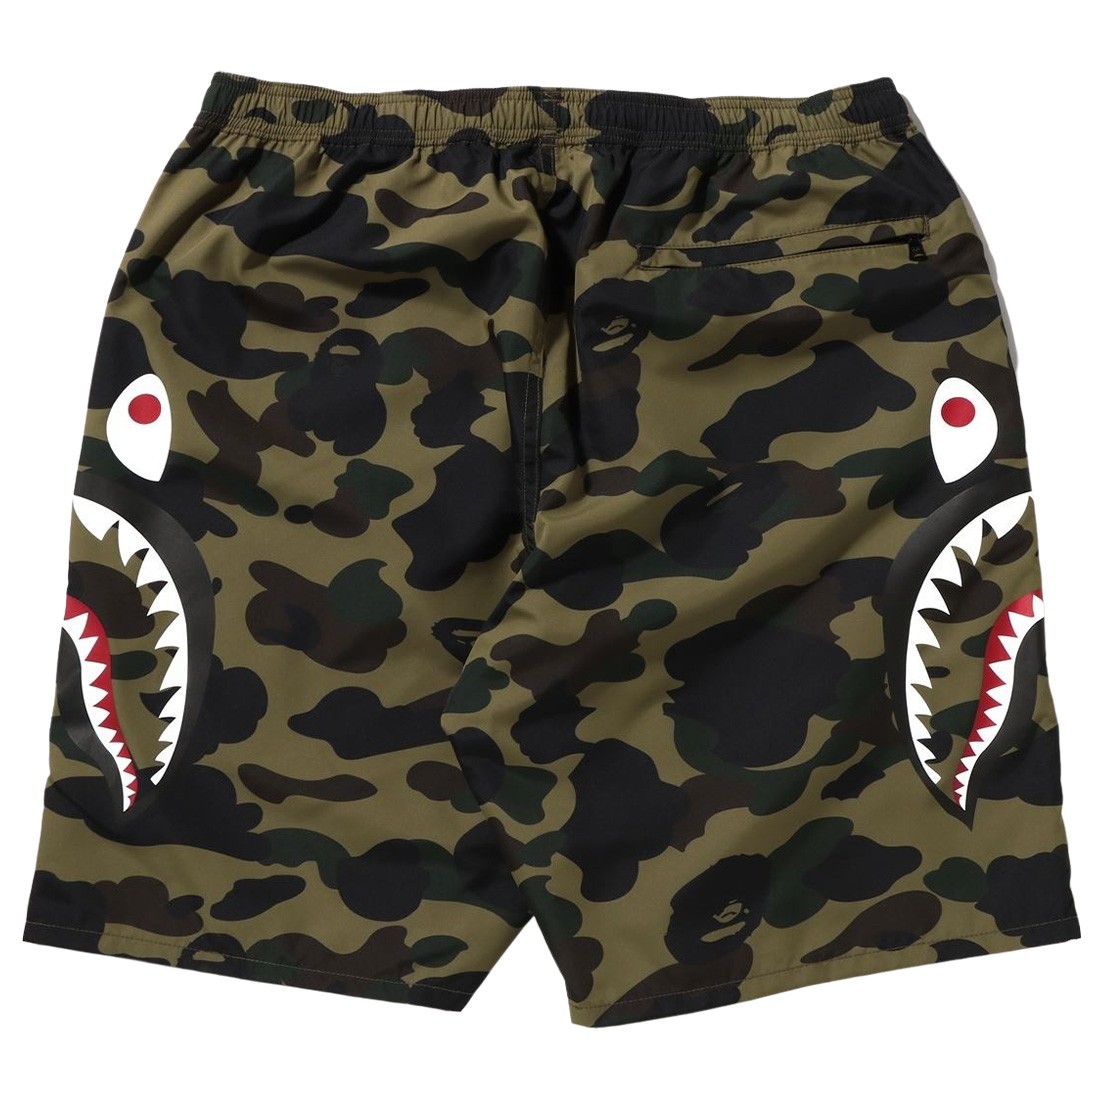 A Shark Camo Side green Ape Shorts 1st Men Bathing Beach